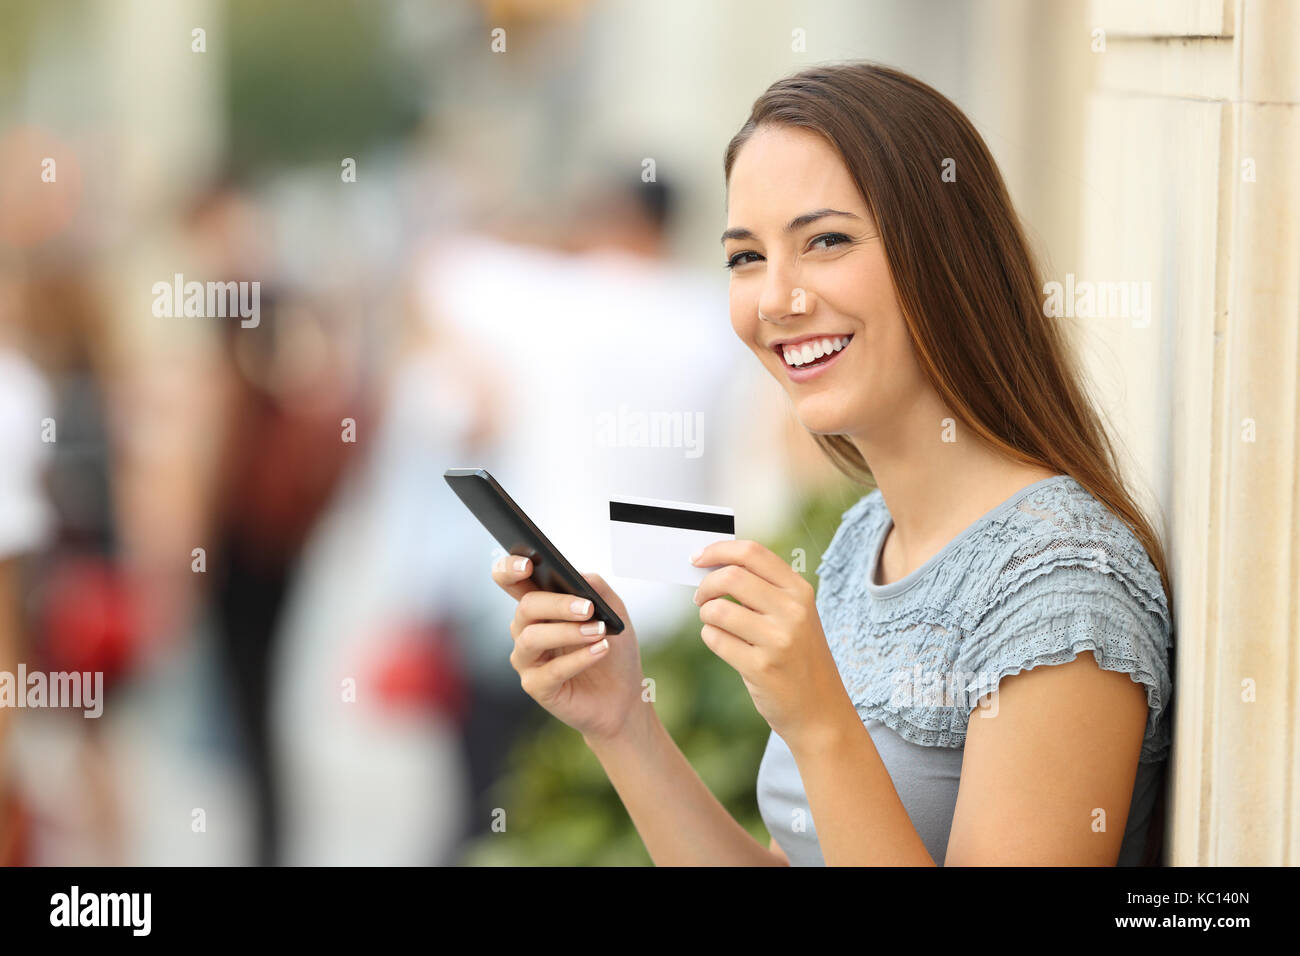 Ritratto di un on line shopper guardando la fotocamera e in possesso di una carta di credito sulla strada Foto Stock